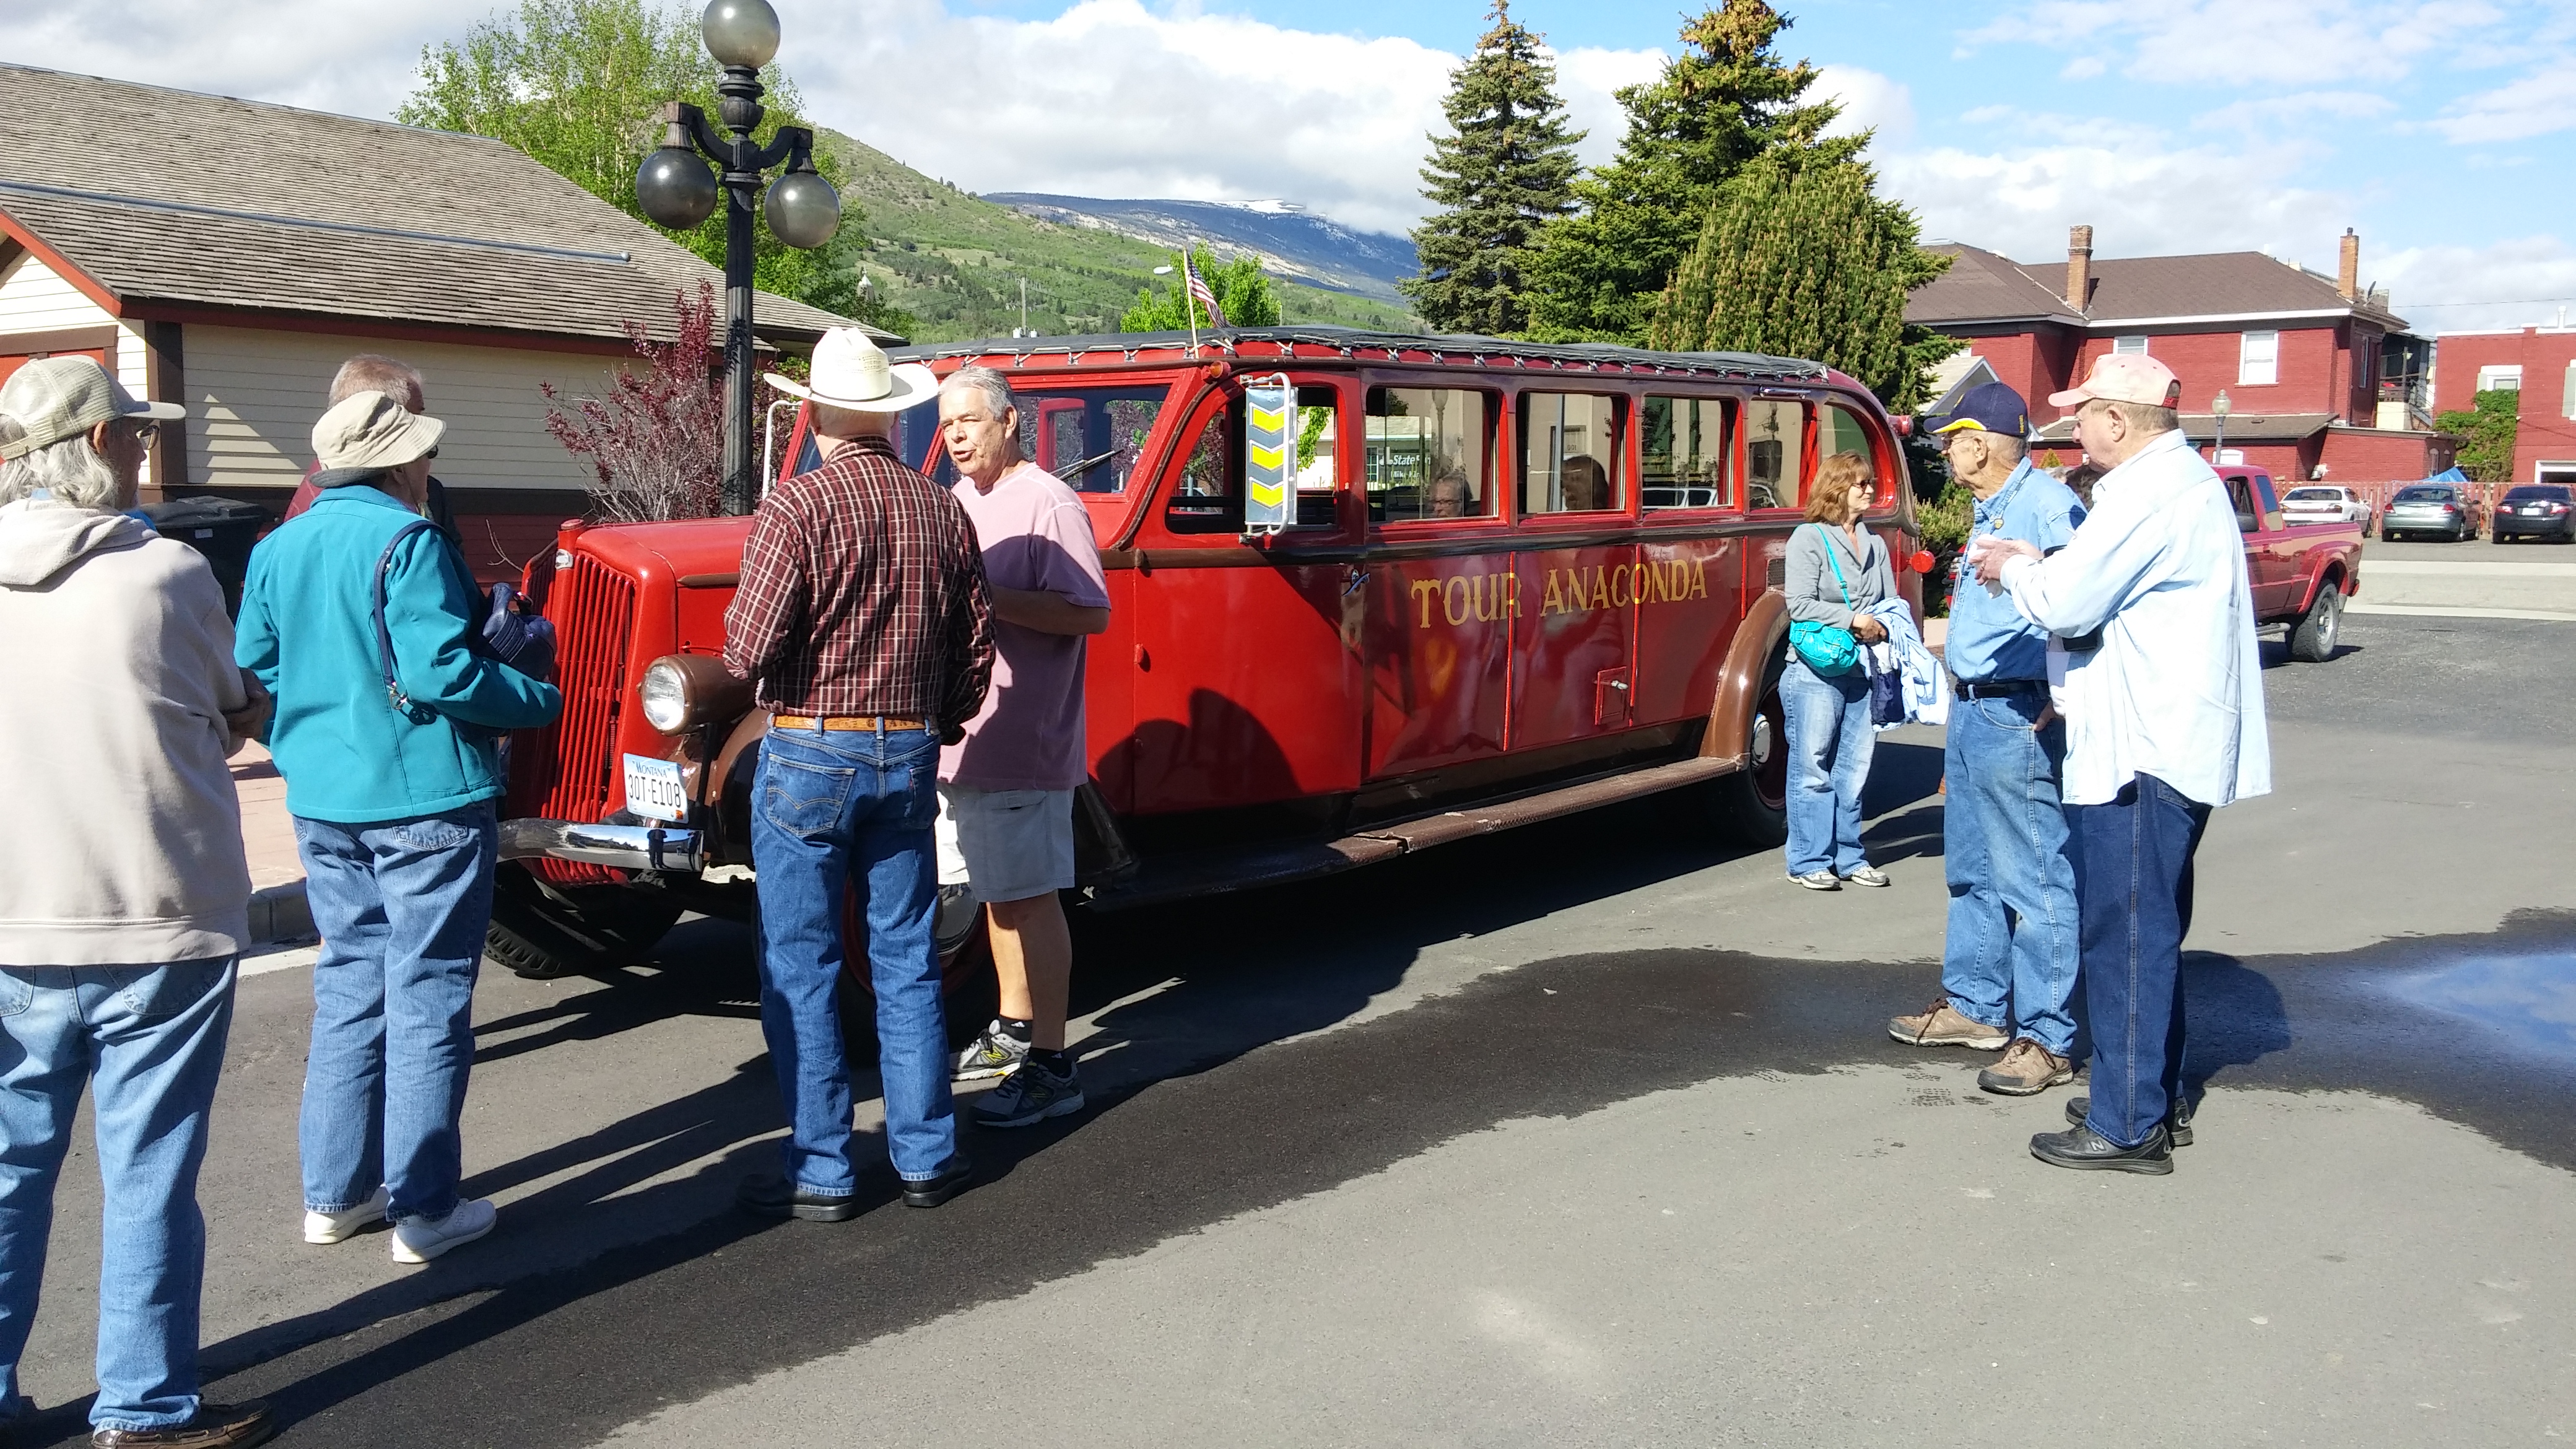 Red bus tour of Ananconda